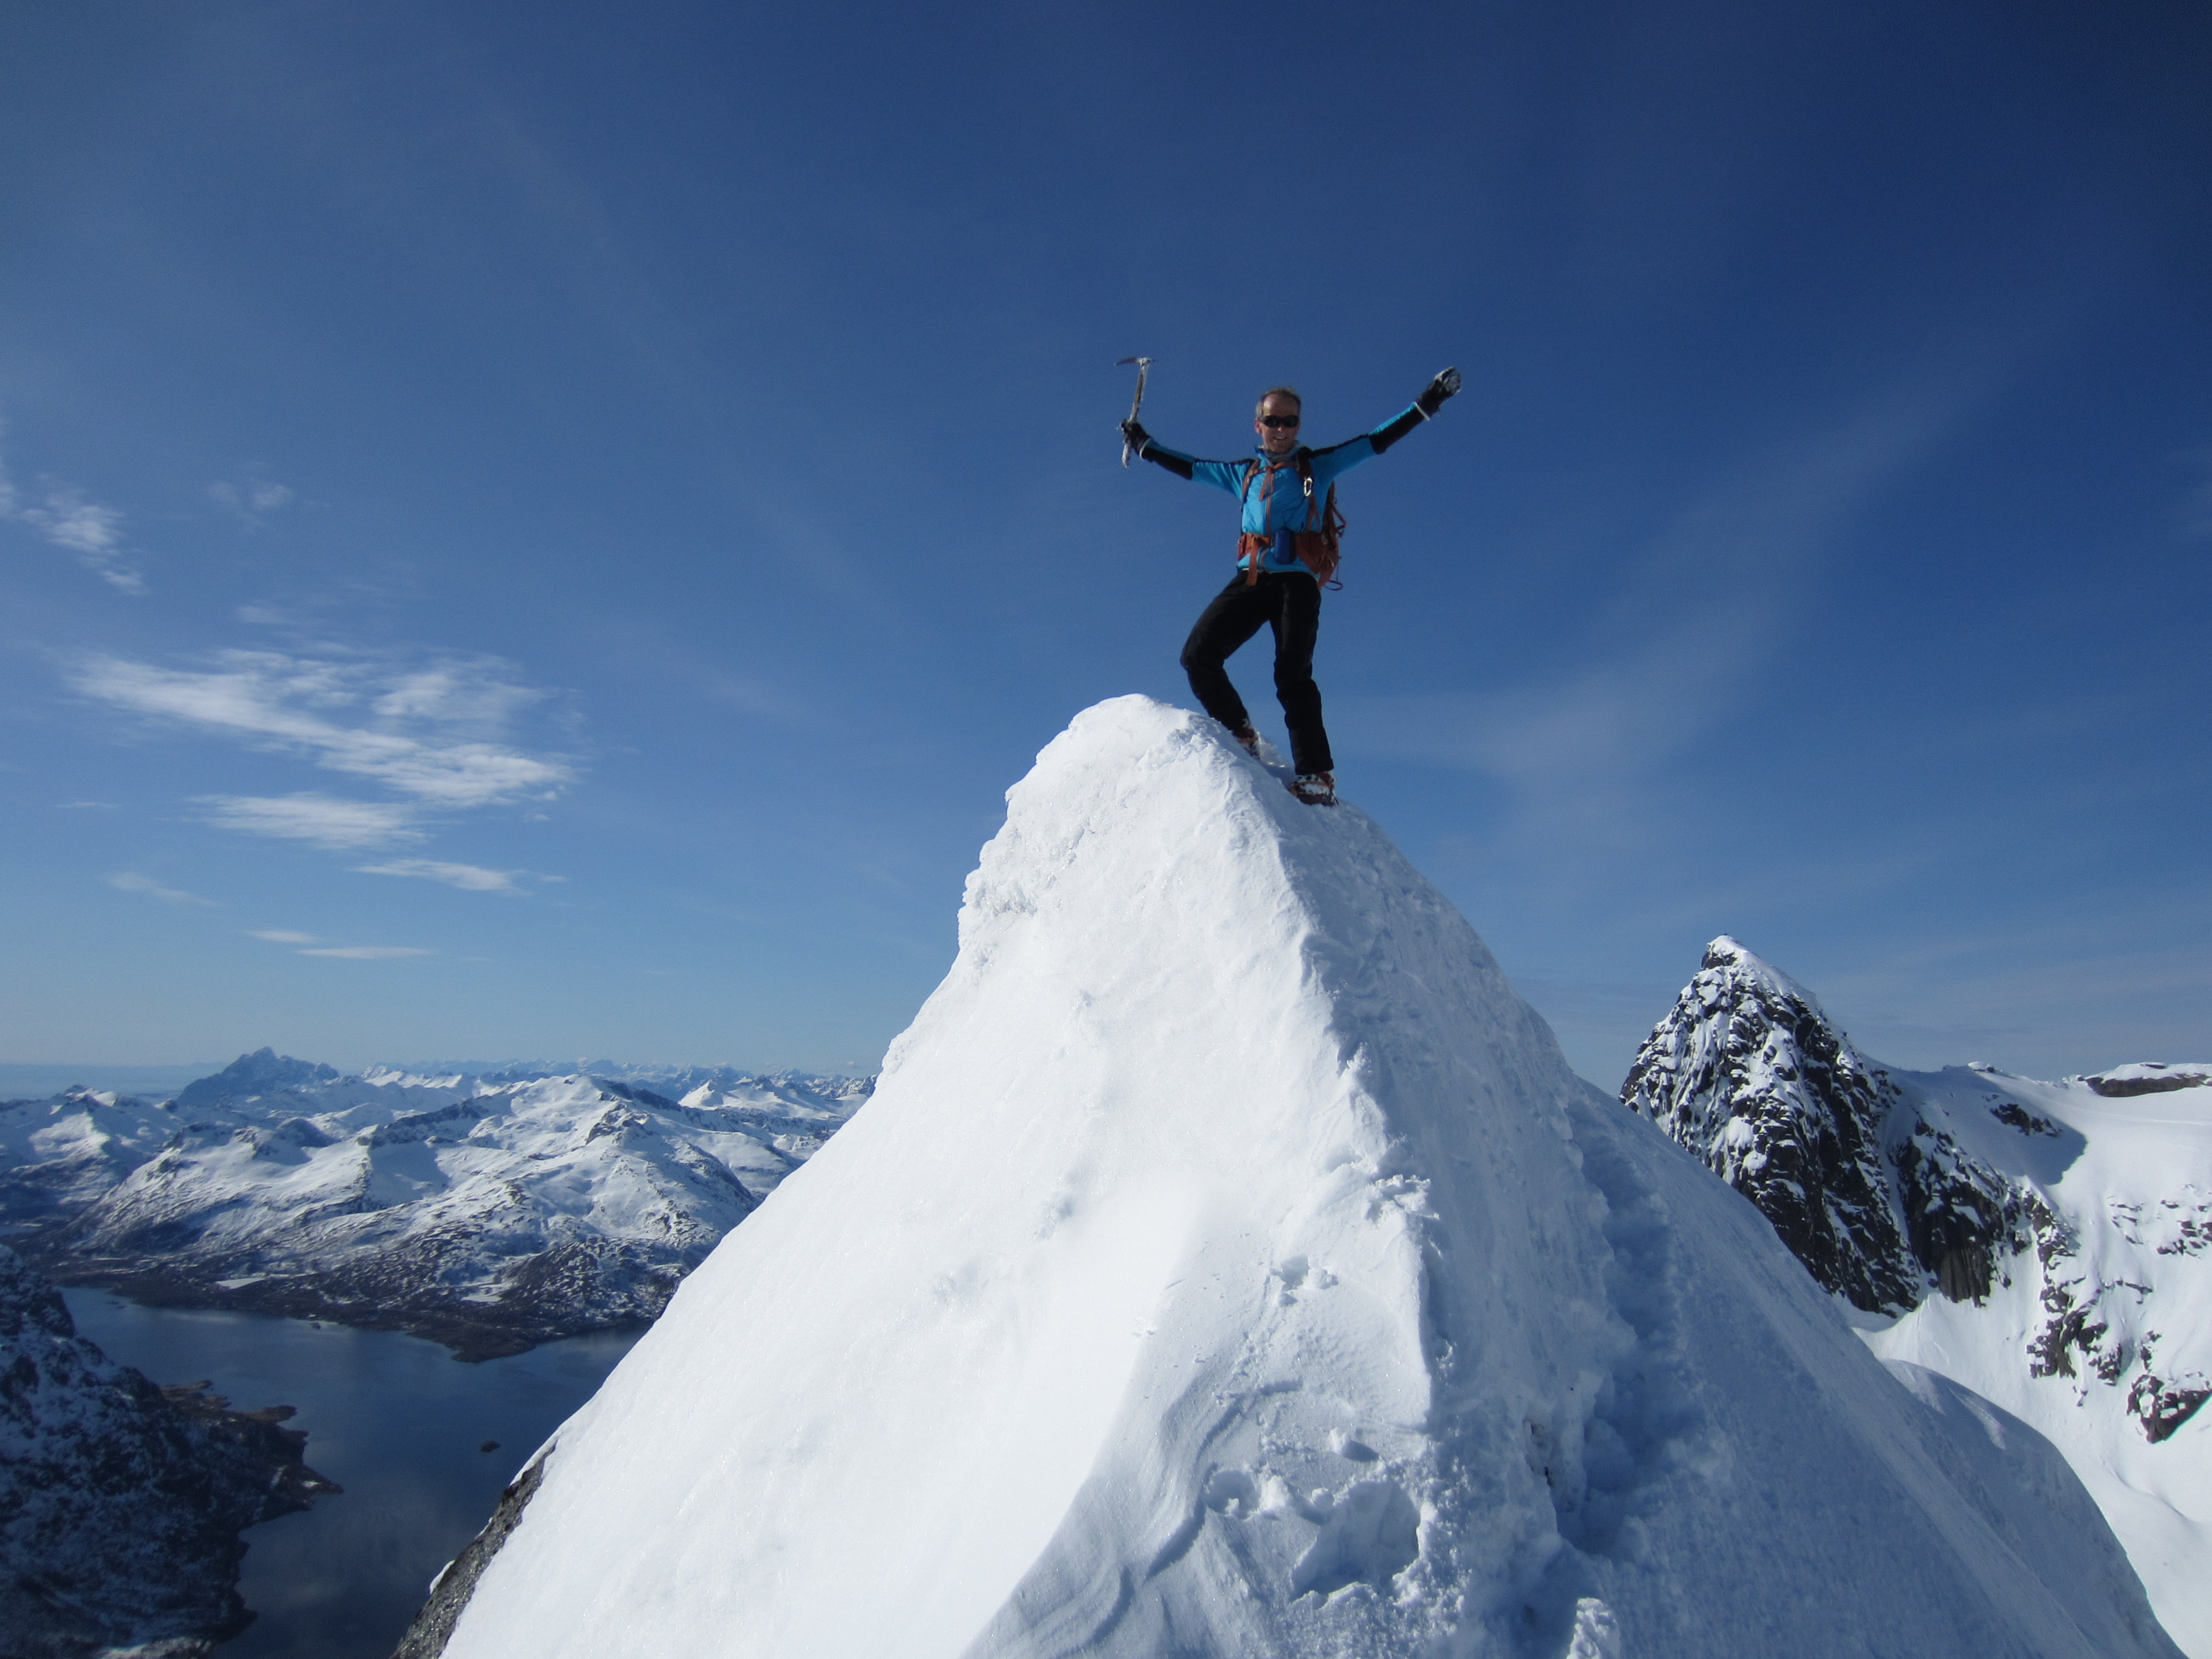 Skitourengehen im hohen Norden: Auf dem Gipfel des Trollsadellen